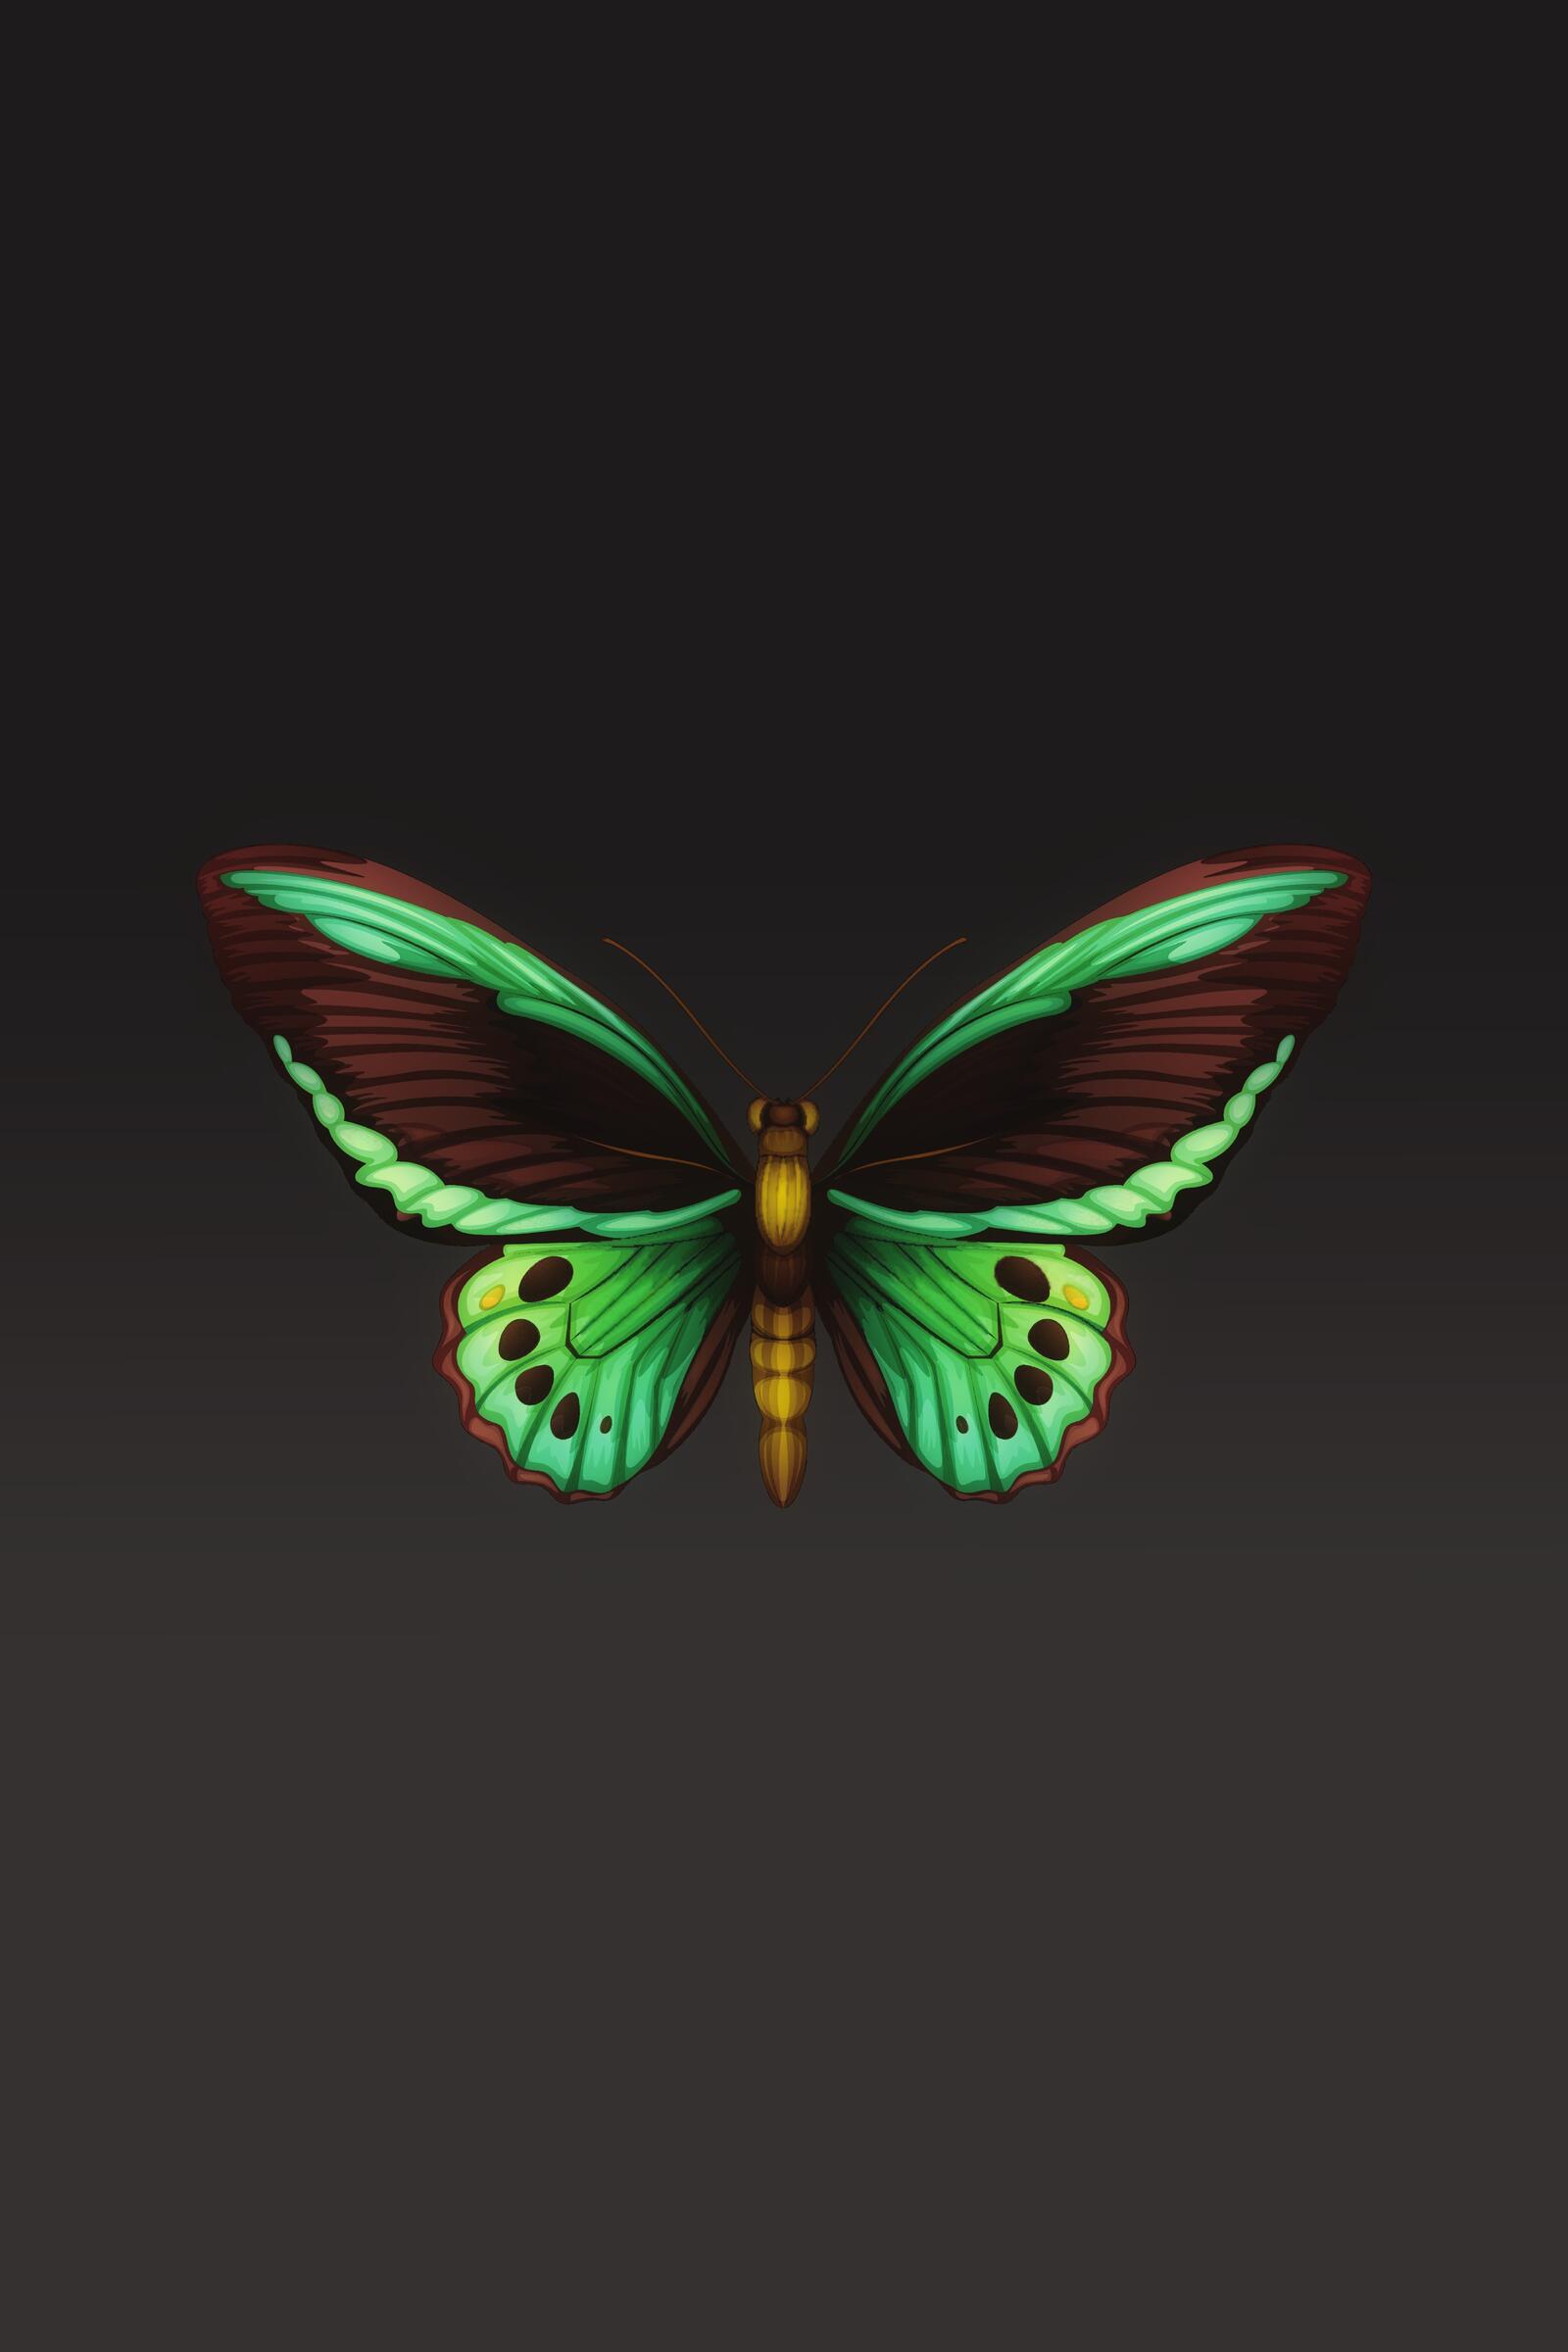 Wallpapers butterfly design digital art wings on the desktop